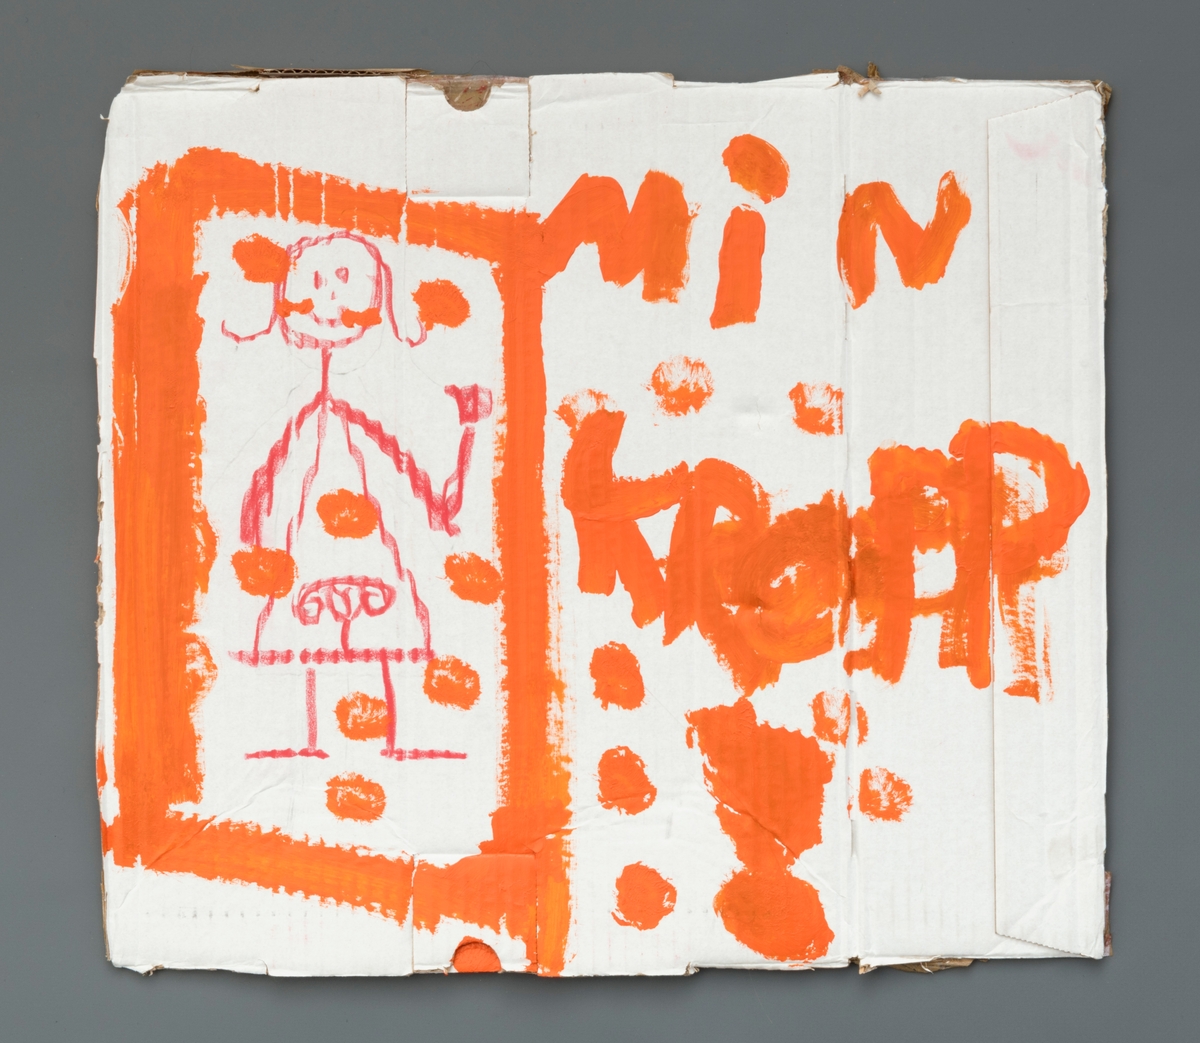 Håndmalt plakat. Hvit papp påmalt oransje tegning og bokstaver "Min kropp".